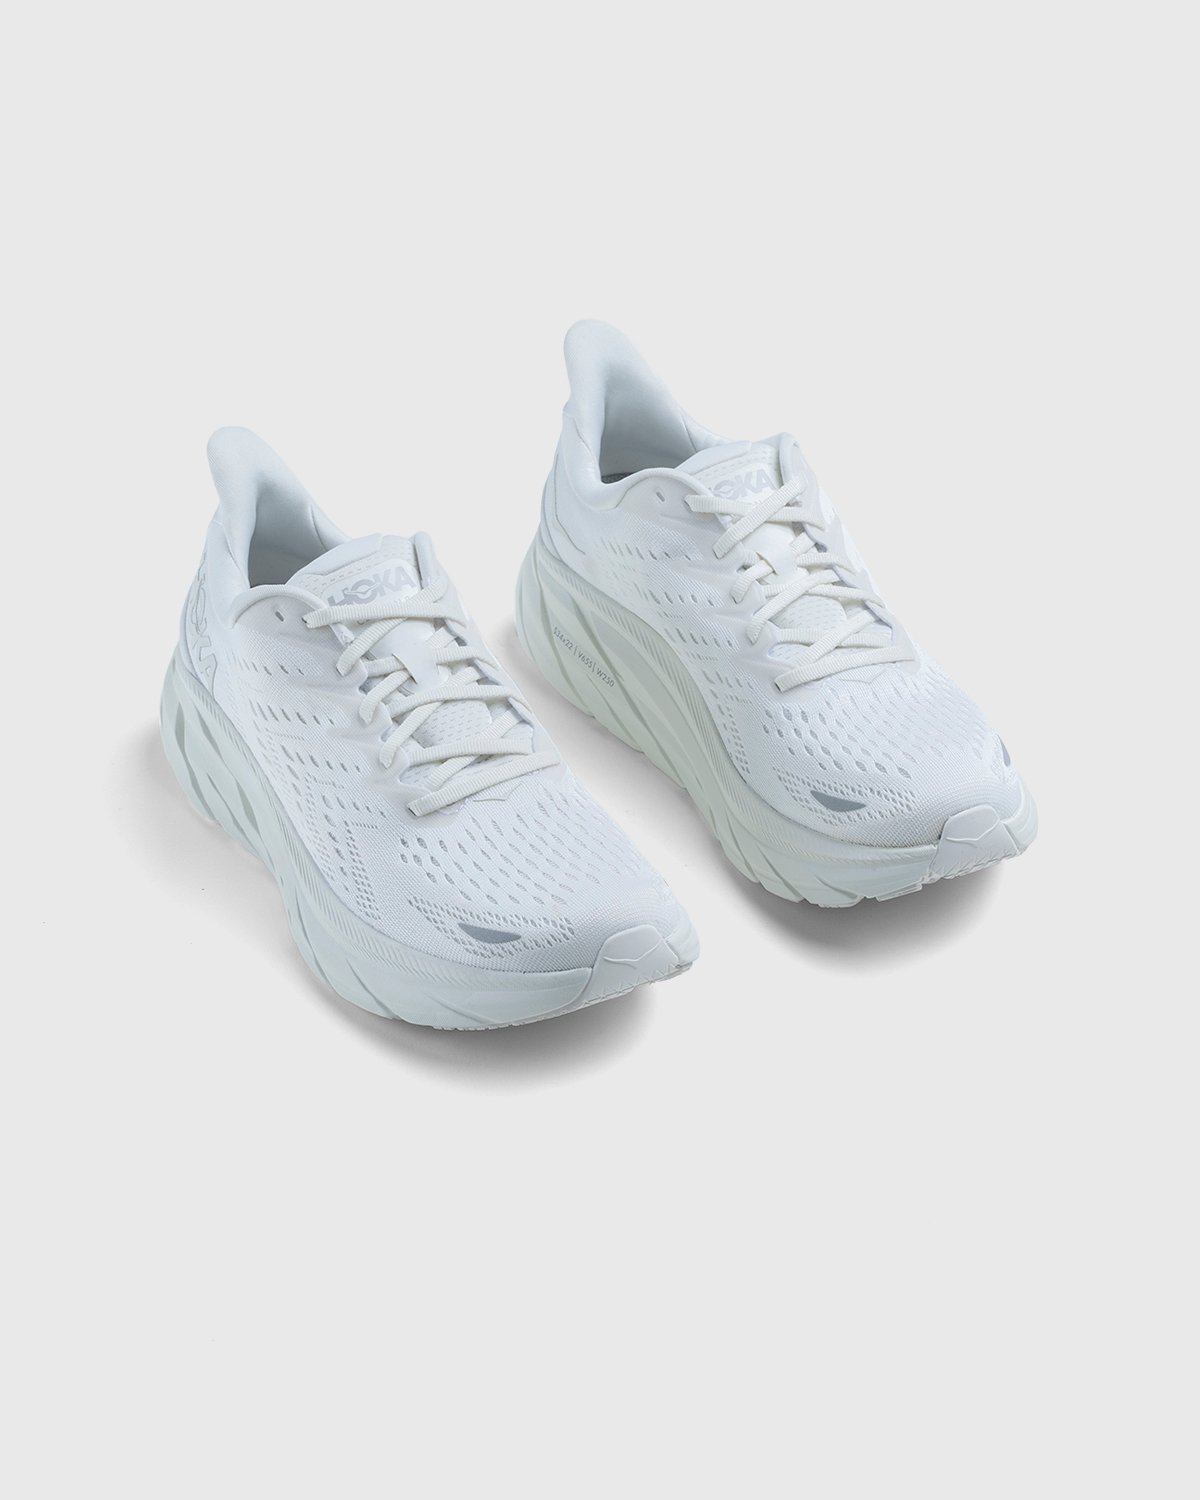 HOKA - Clifton 8 White / White - Footwear - White - Image 3